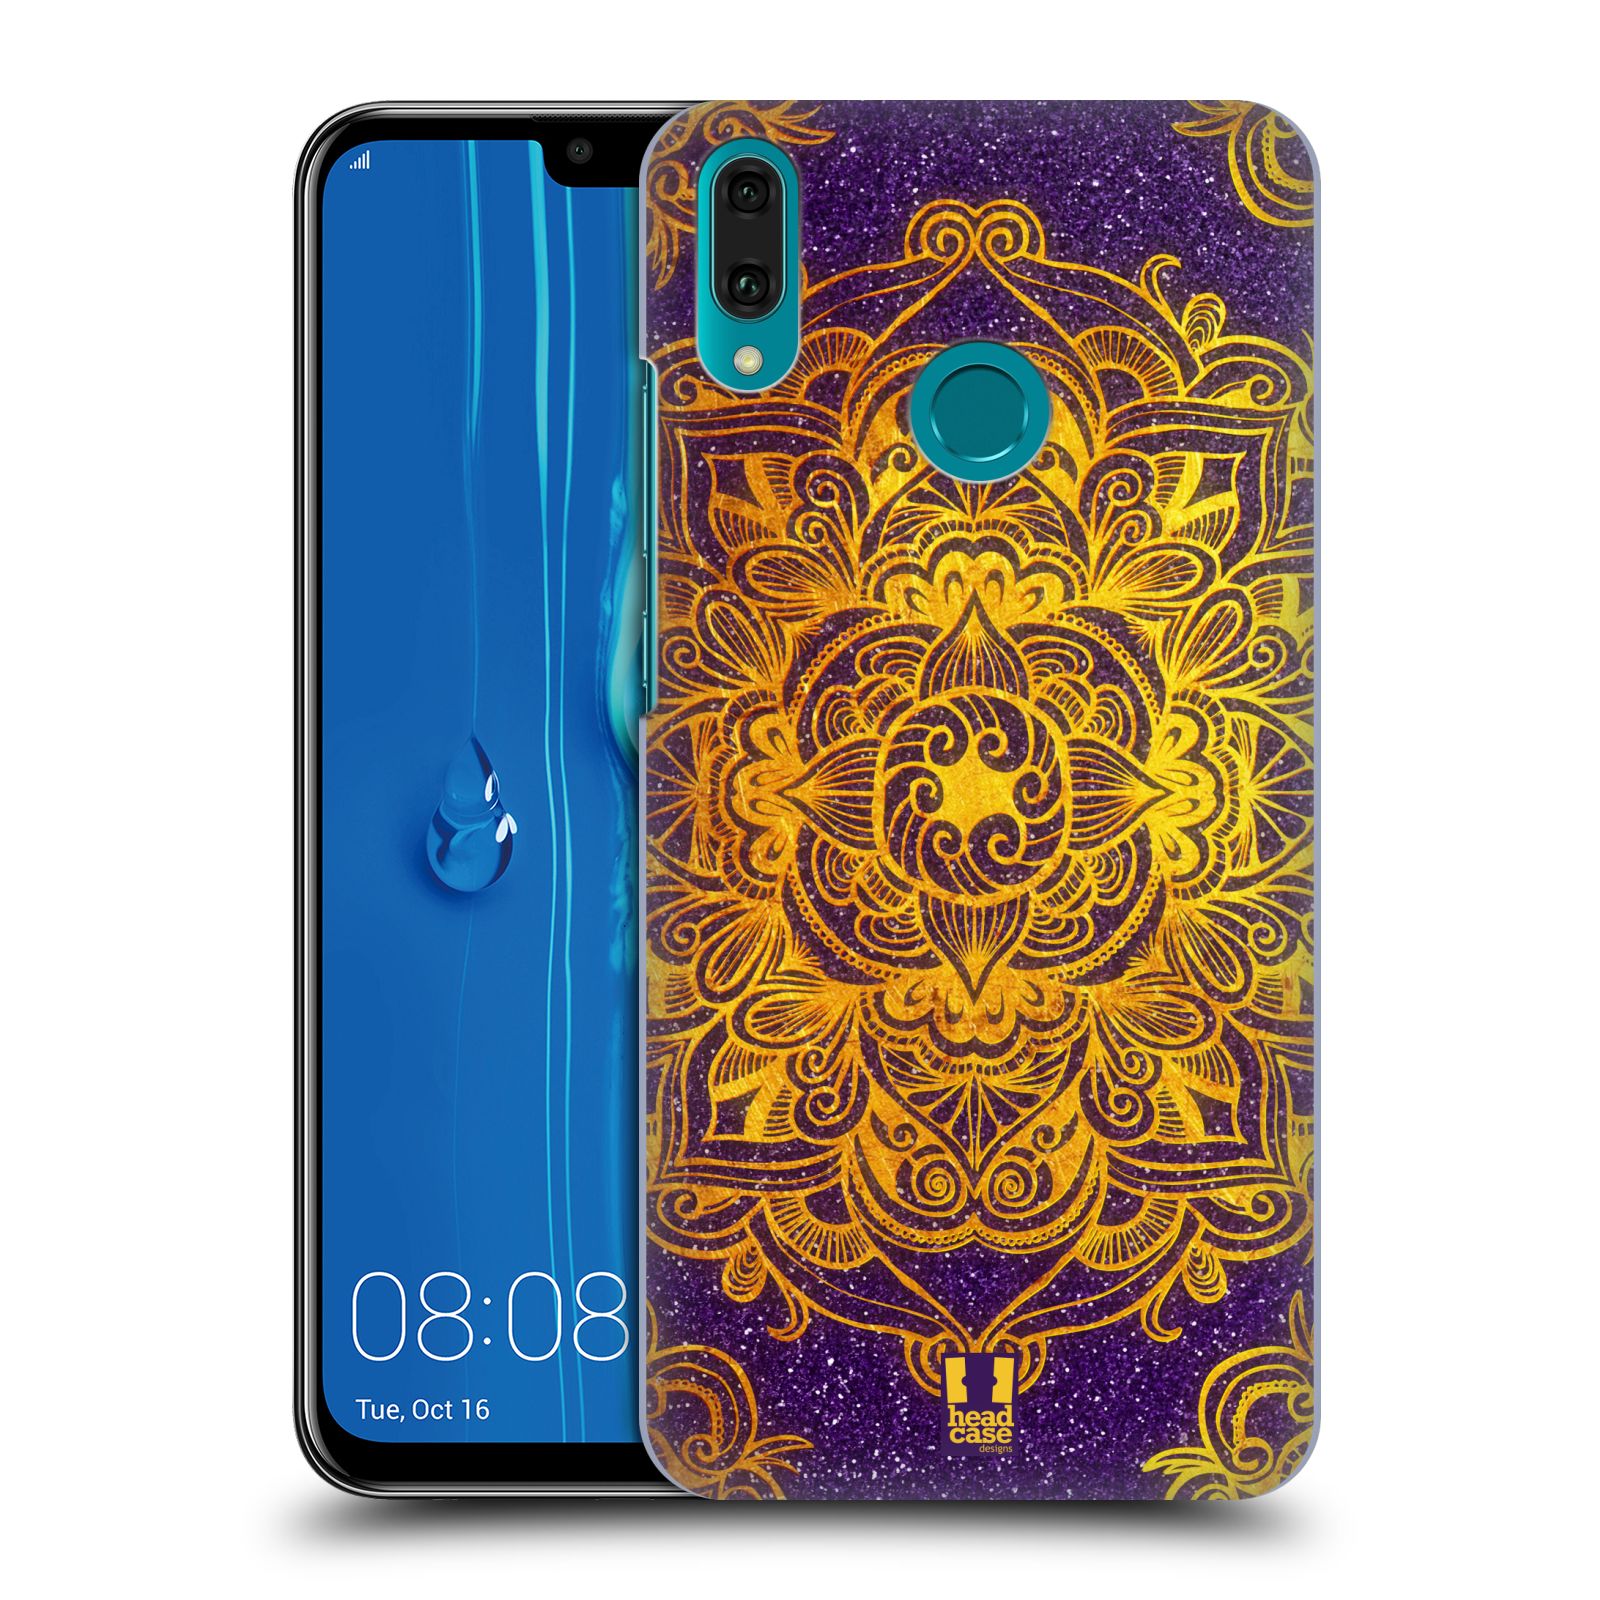 Pouzdro na mobil Huawei Y9 2019 - HEAD CASE - vzor Indie Mandala slunce barevná ZLATÁ A FIALOVÁ